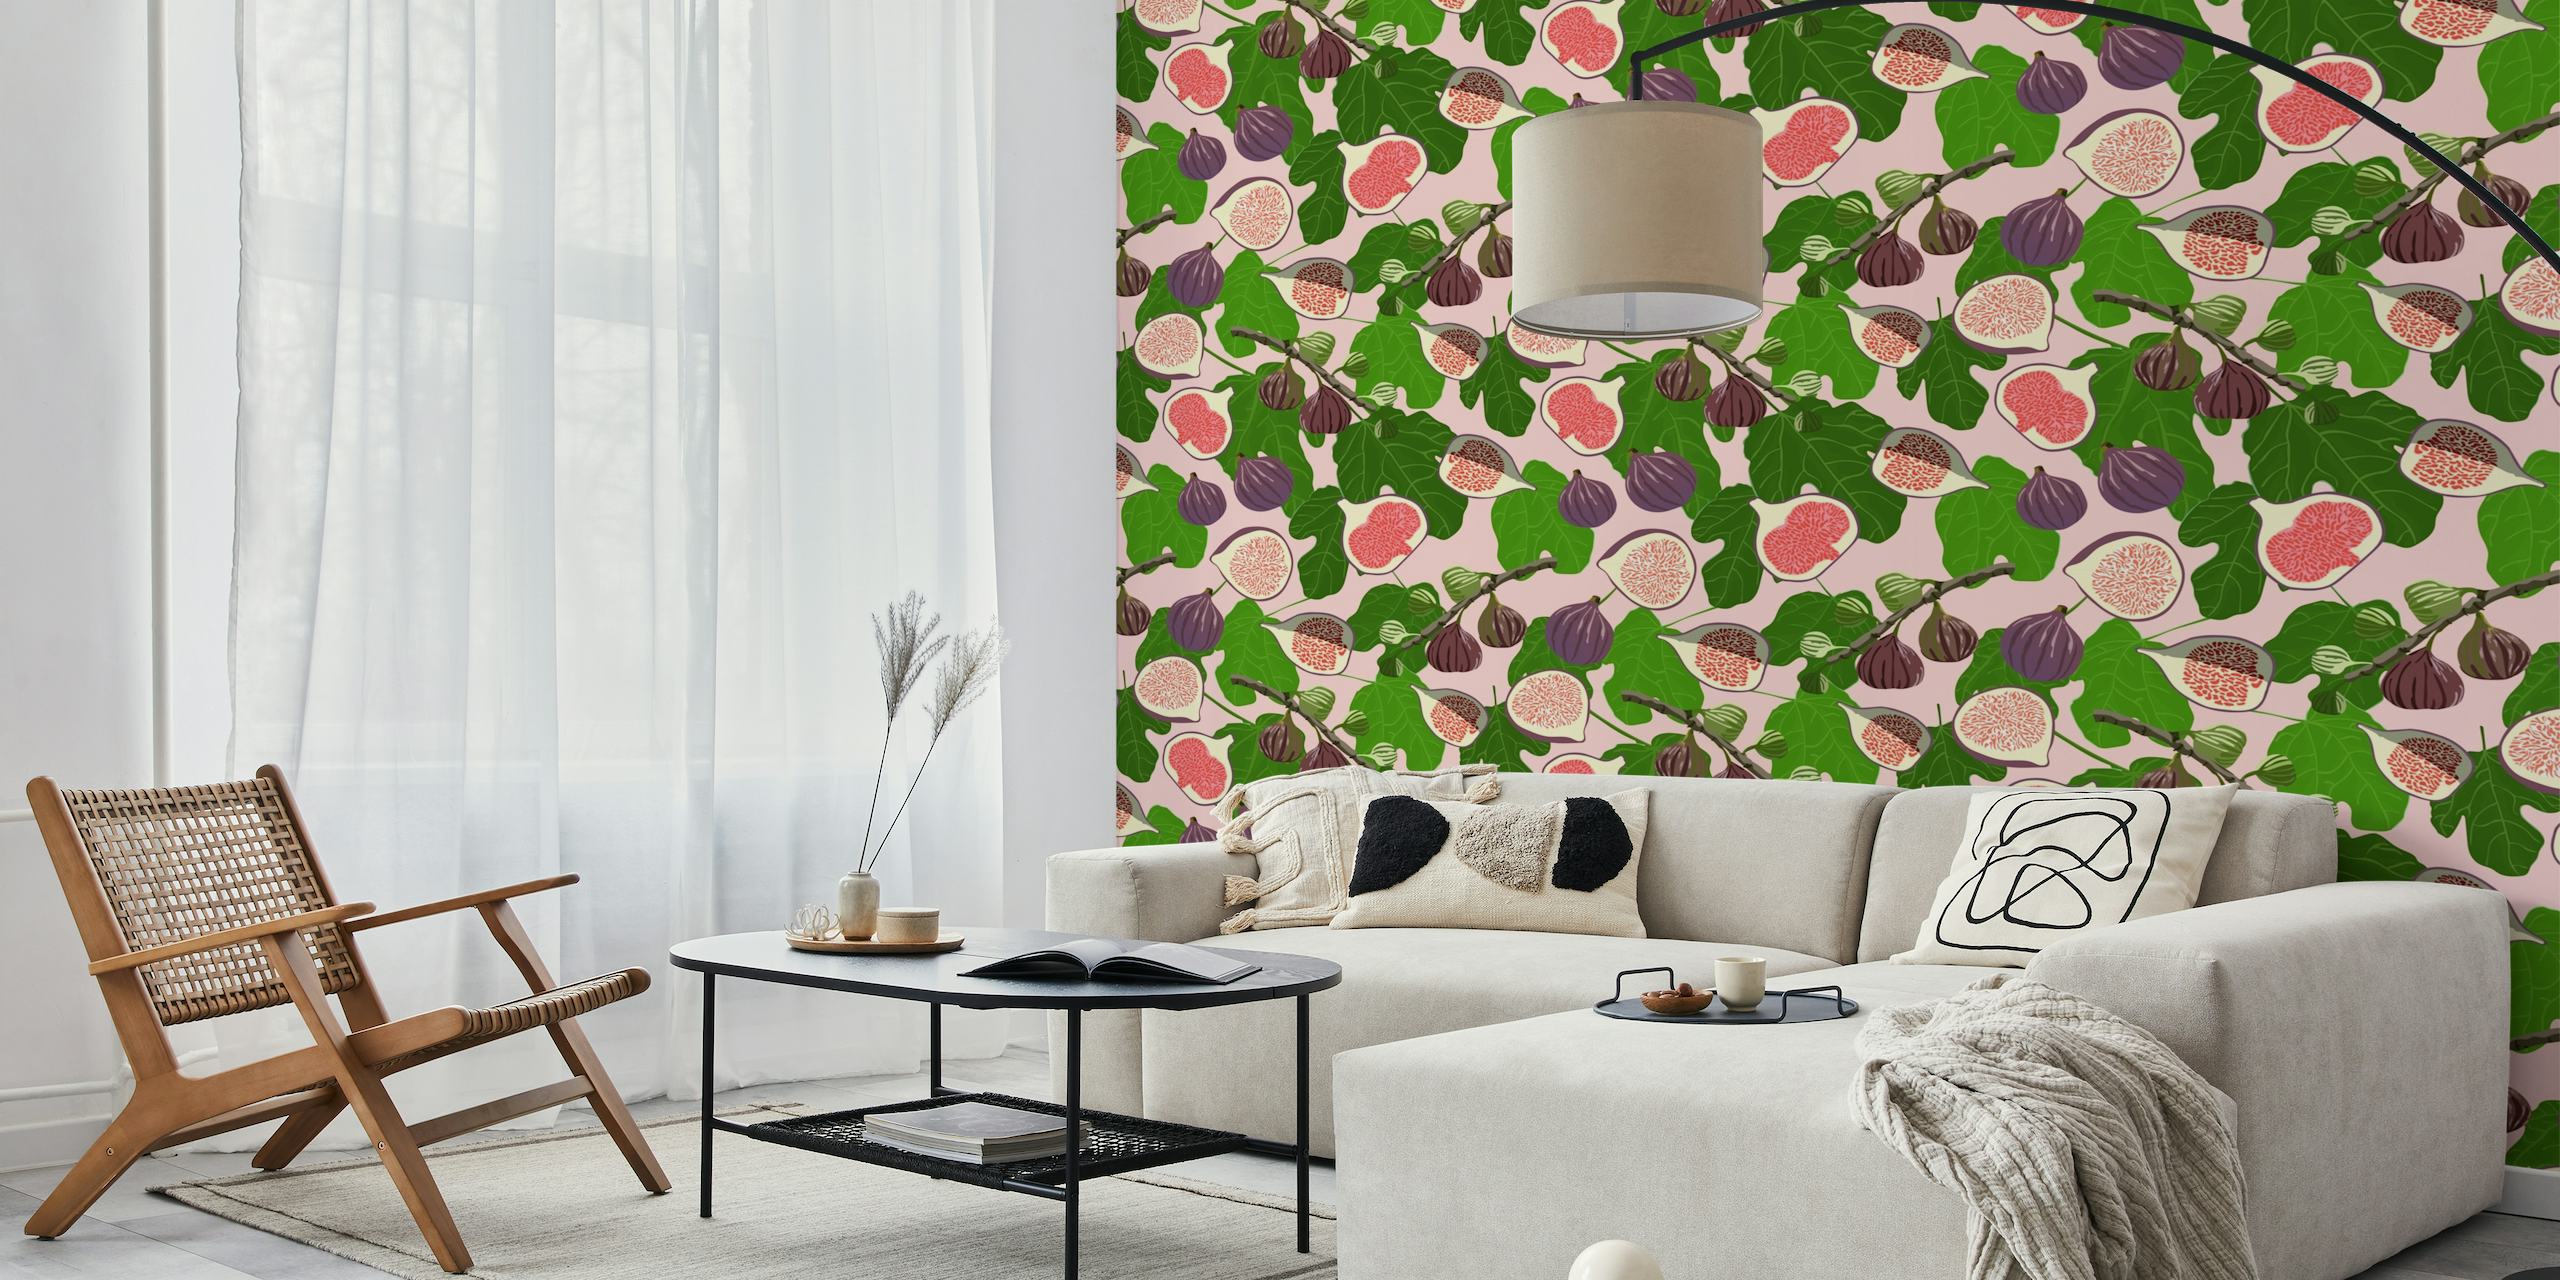 Mural de parede brilhante e convidativo 'Figs and Leaves' com figos rosa e roxos em meio a um padrão de folhagem verde